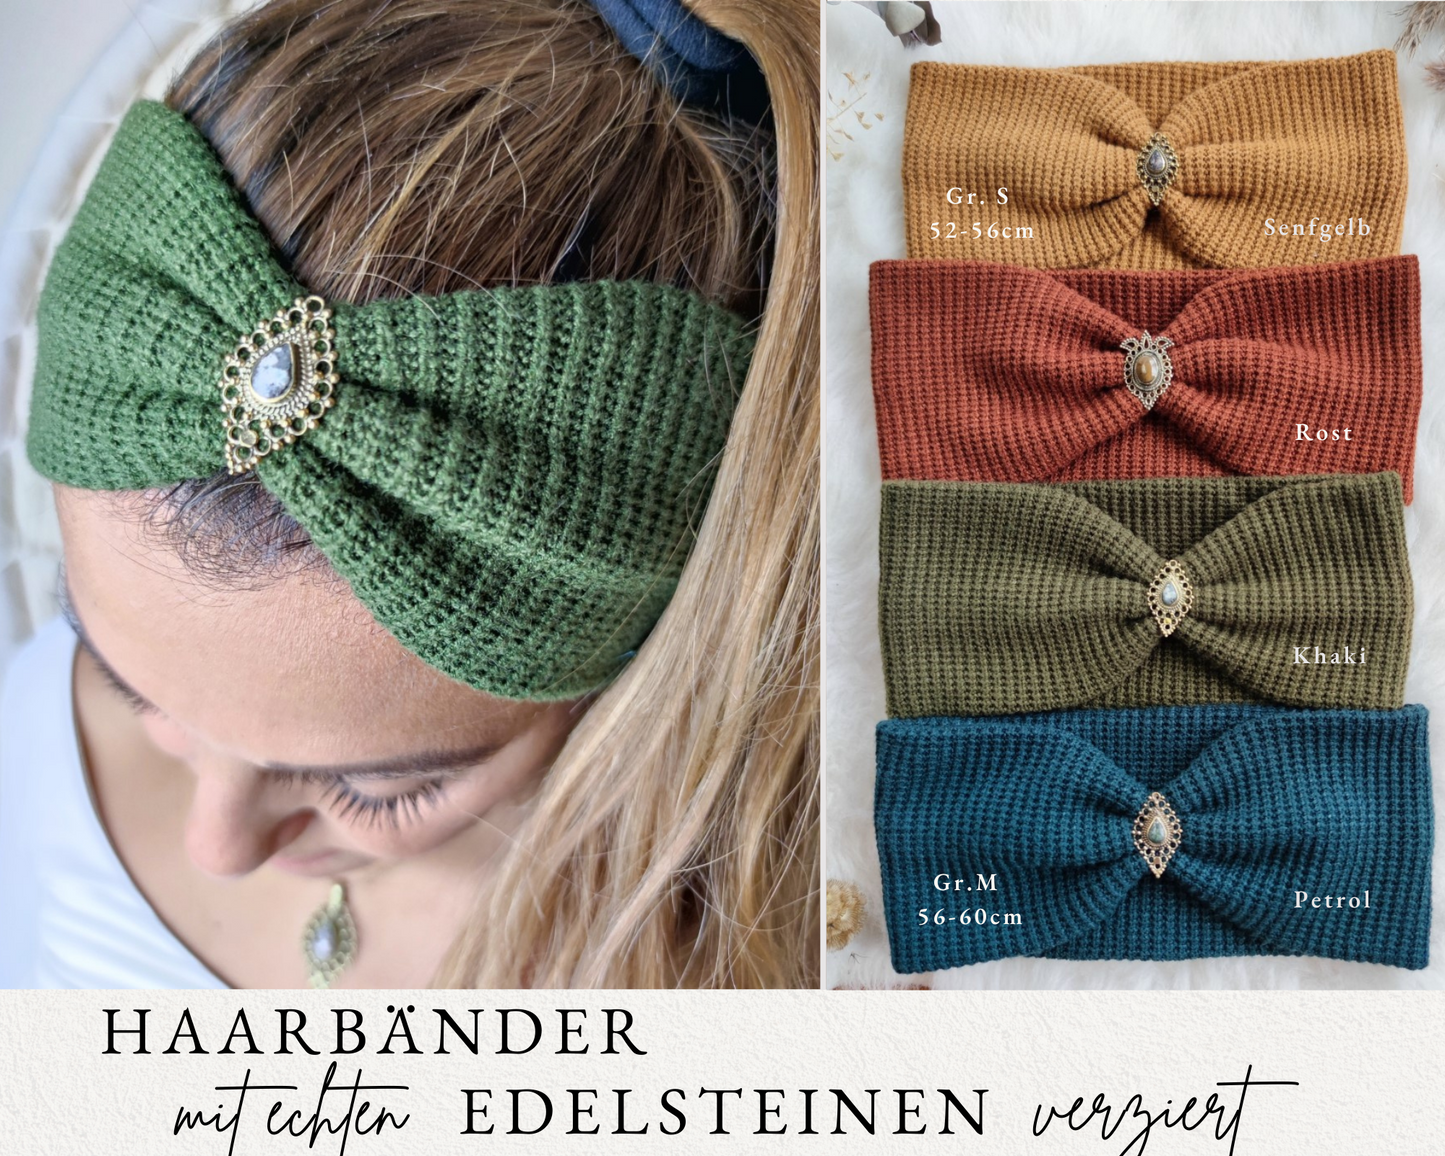 Boho Haarbänder Waffeloptik mit Edelsteinen verziert in 4 Farben - Harmonie Kollektion